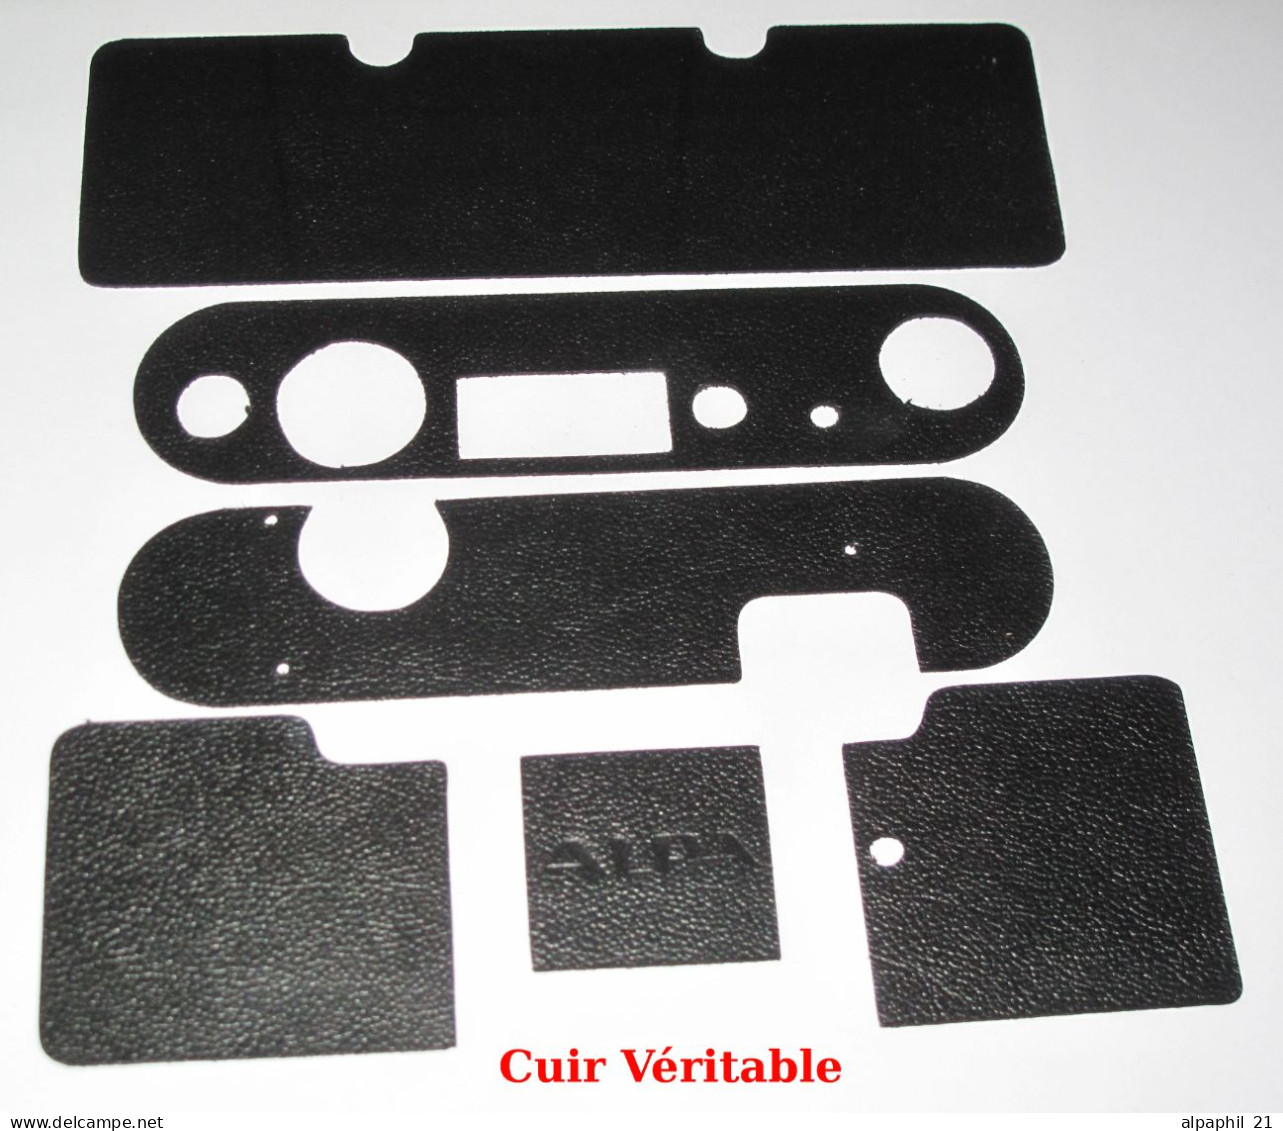 Alpa Reflex, Black Veritable Leather For Alpa Standard - Materiale & Accessori